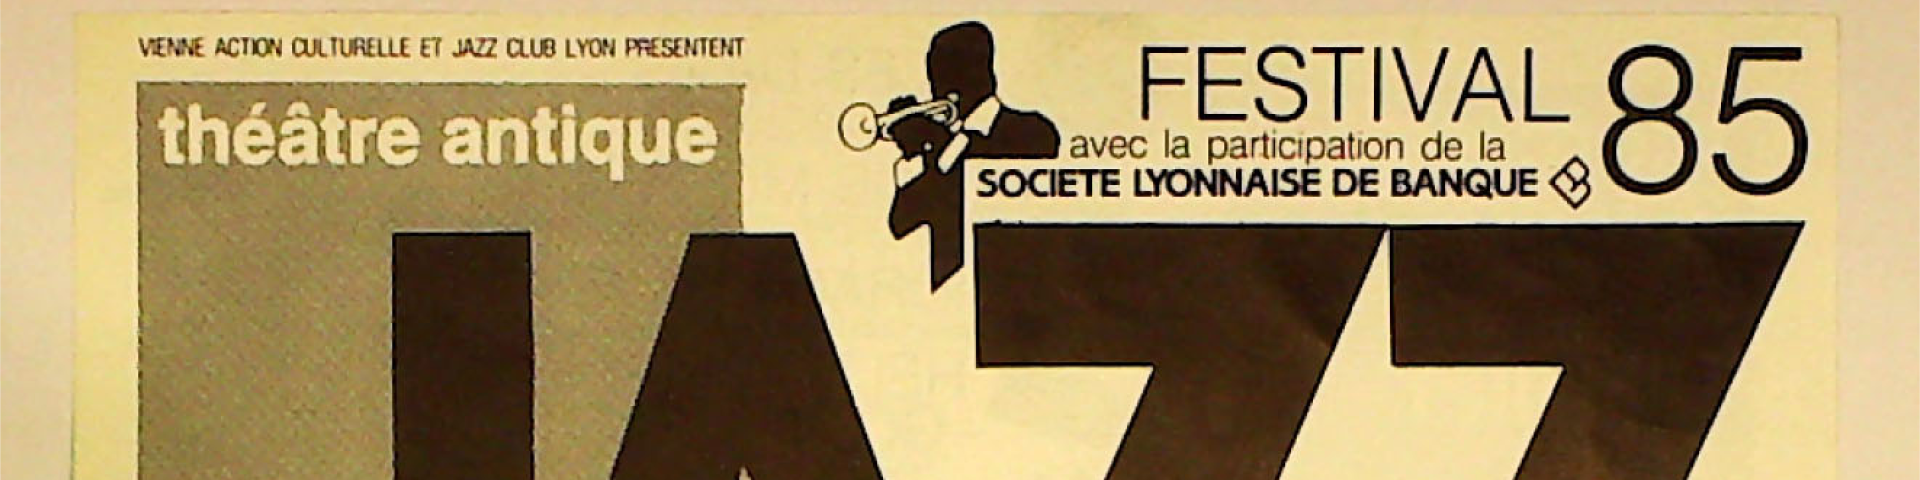 Affiche de l'édition de 1985